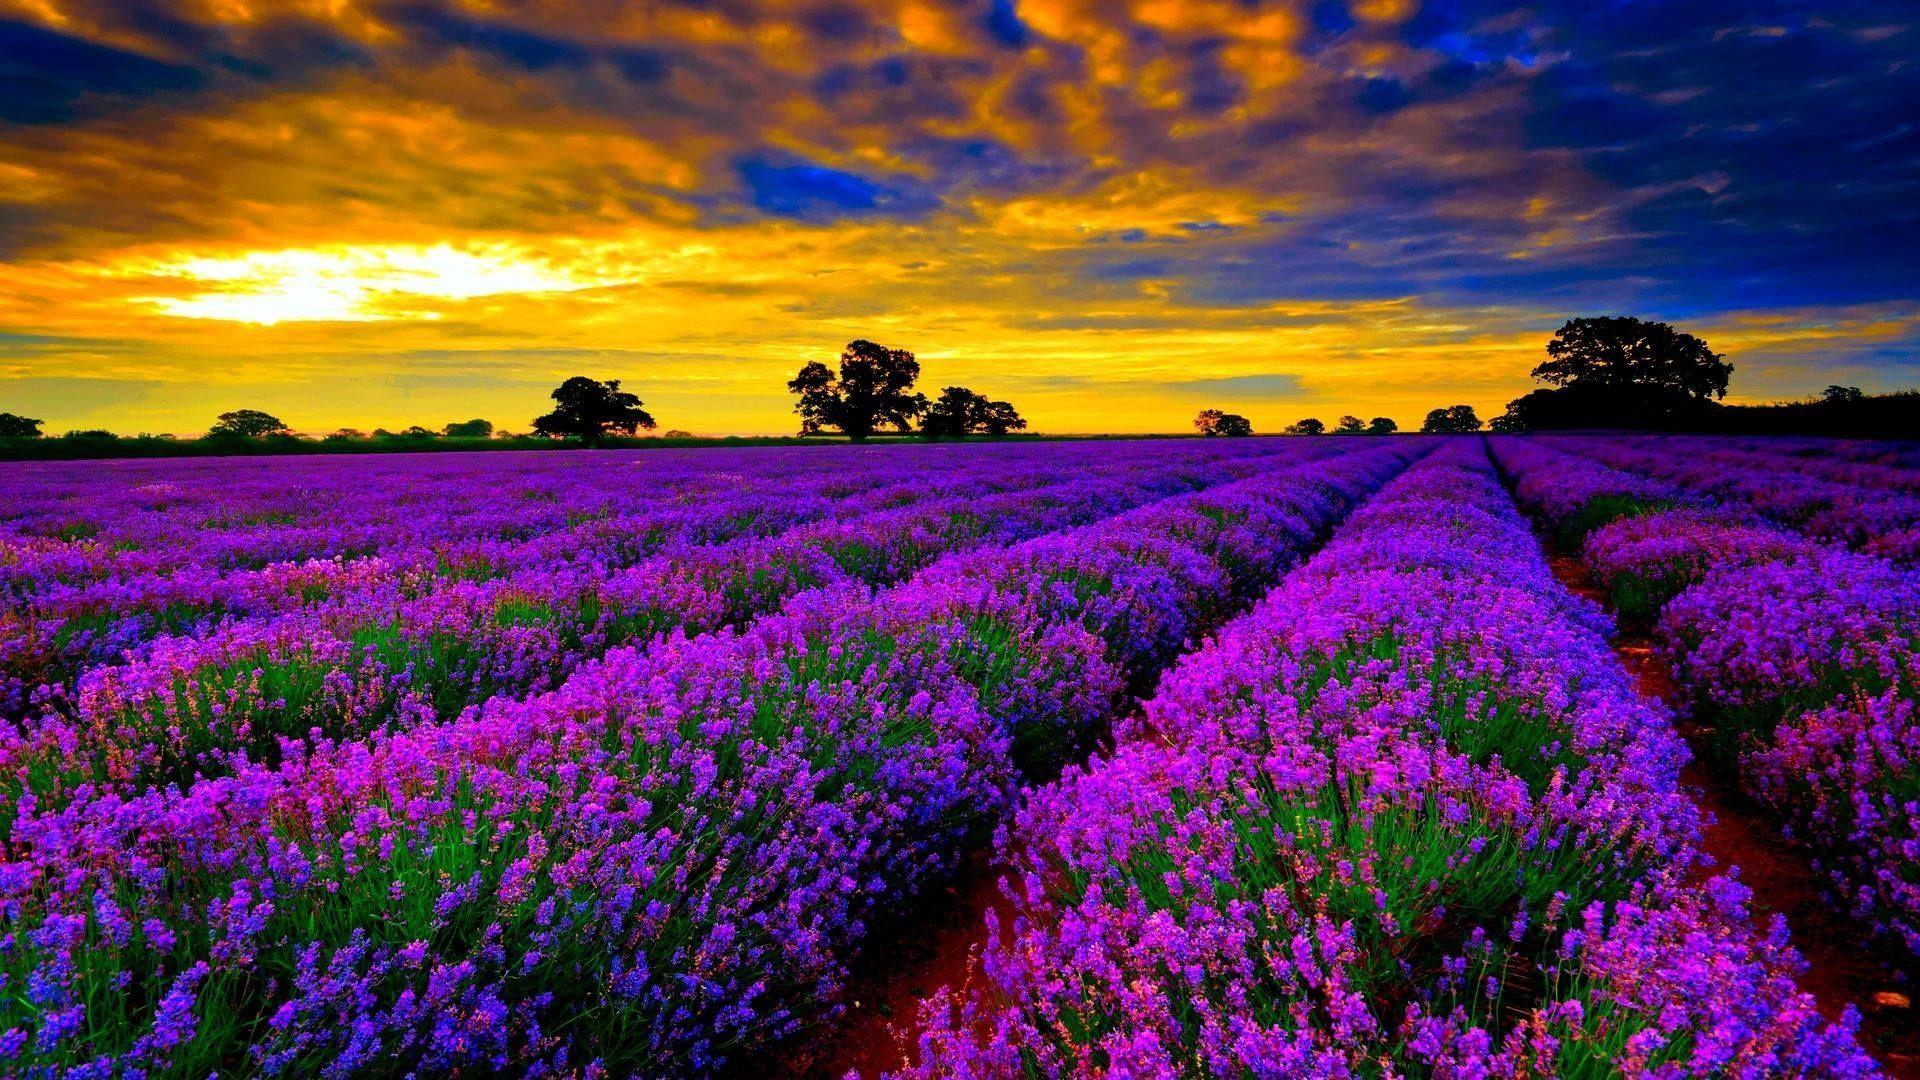 Hình nền 1920x1080 Lavender Fields in France - Tải xuống tại